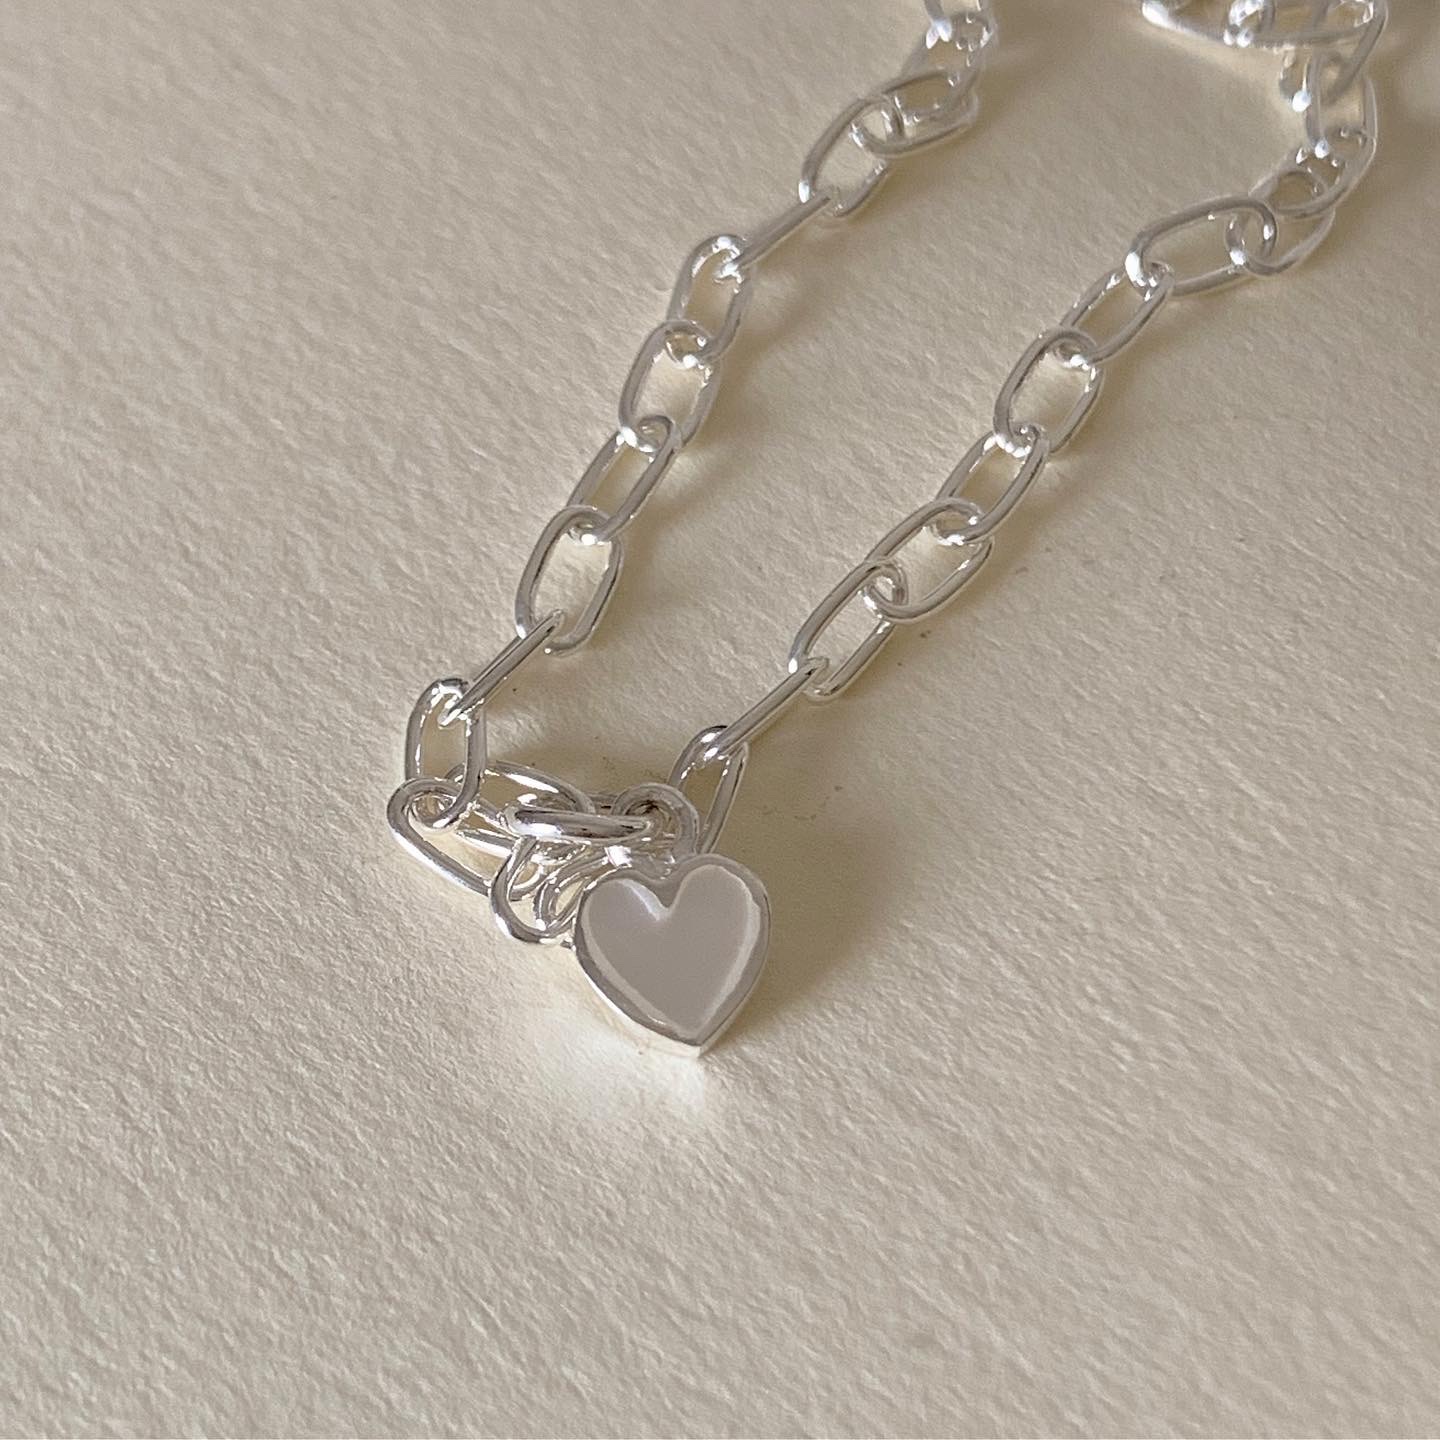 Your wishlist / สร้อยข้อมือเงินแท้ จี้เปลือกหอยทรงหัวใจ+กระดิ่ง (ไม่รับแจ้งได้ค่า) / Miniclip bracelet with snow heart